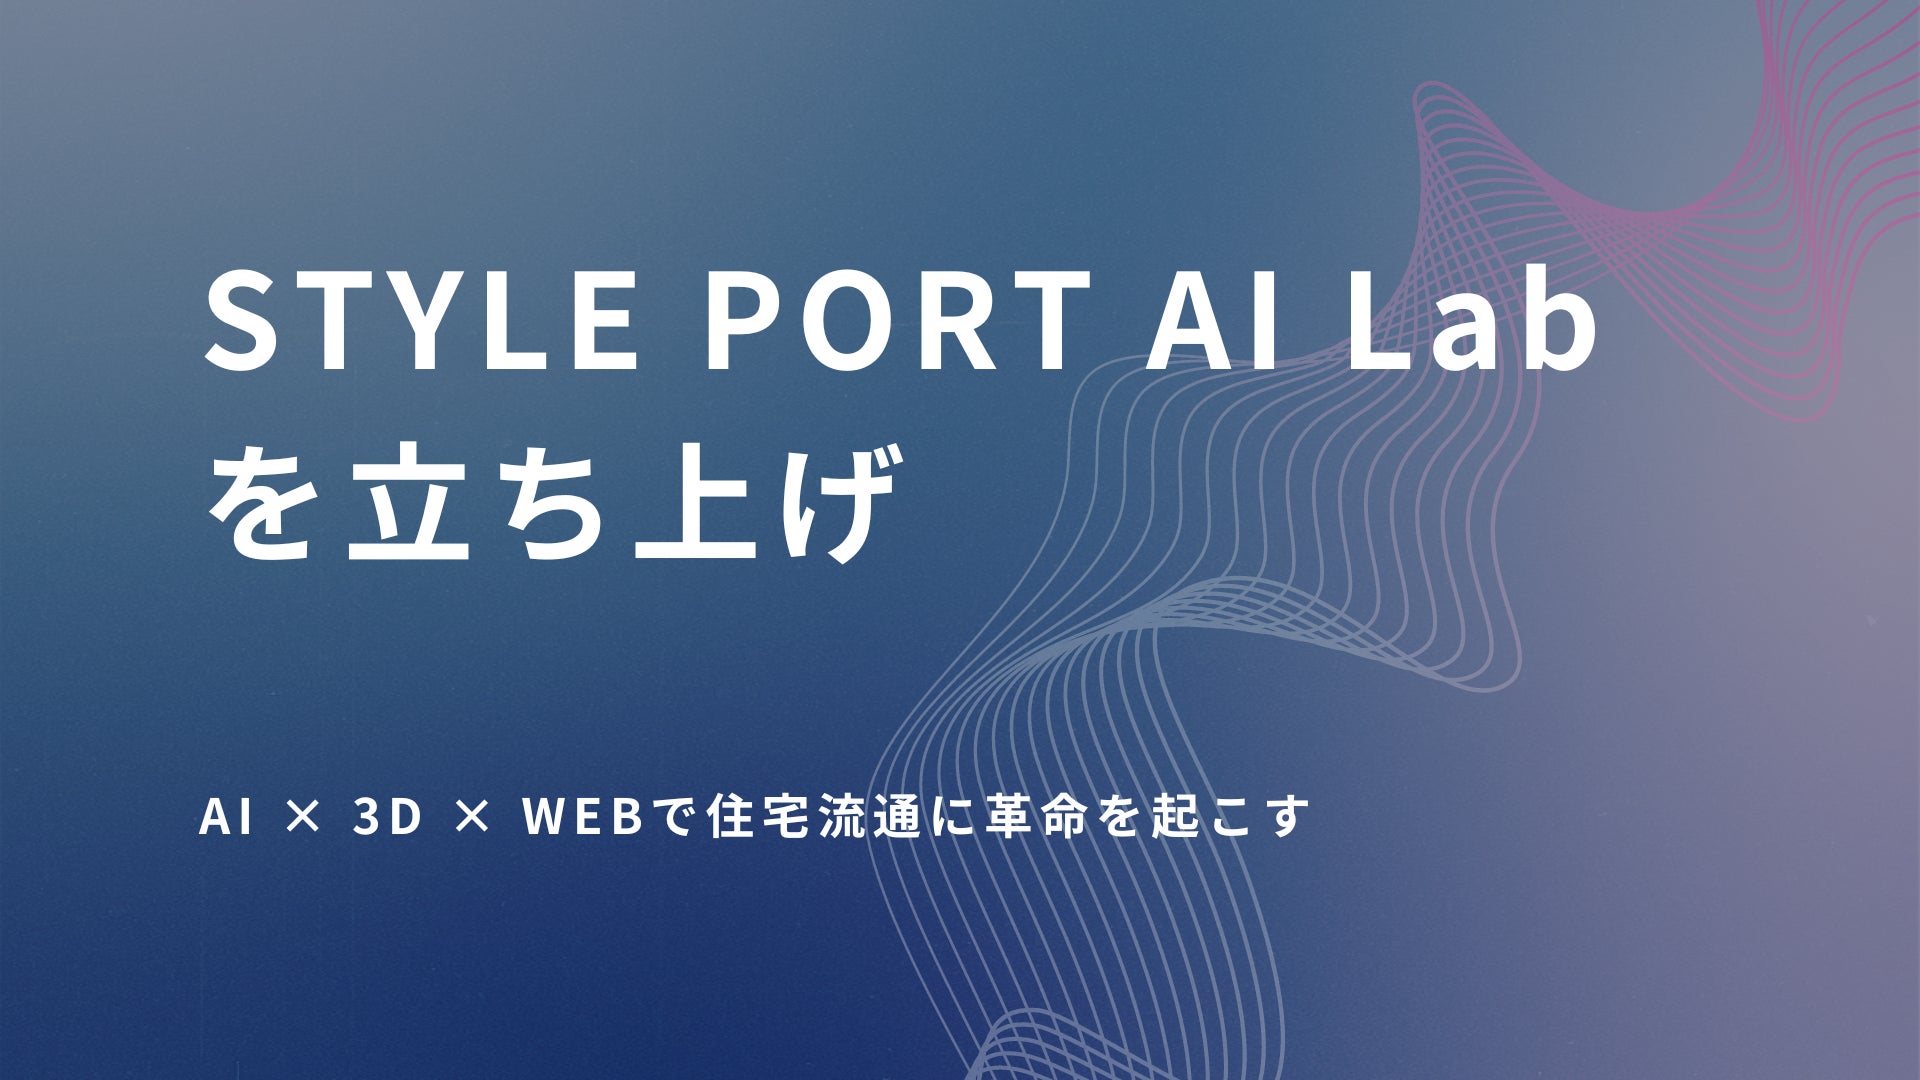 AIx3DxWebで住宅流通に革命を起こす住空間コミュニケーション・プラットフォームのスタイルポートが「STYLE PORT AI Lab」を立ち上げのサブ画像1